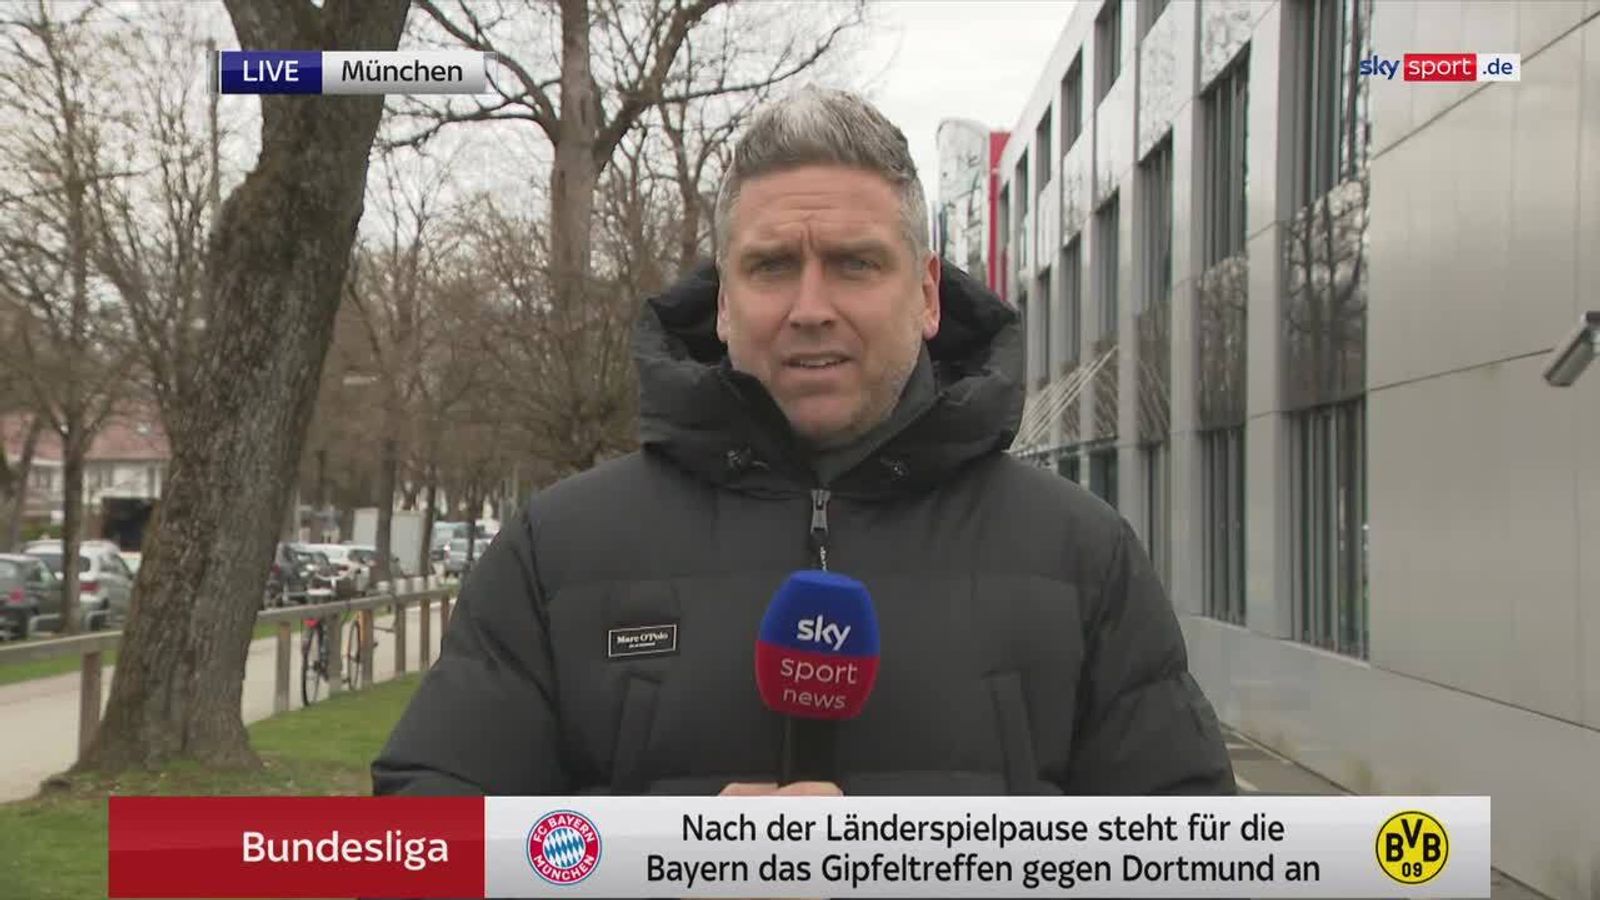 FC Bayern München Klassiker-Einsatz von Choupo-Moting and Musiala fraglich Fußball News Sky Sport